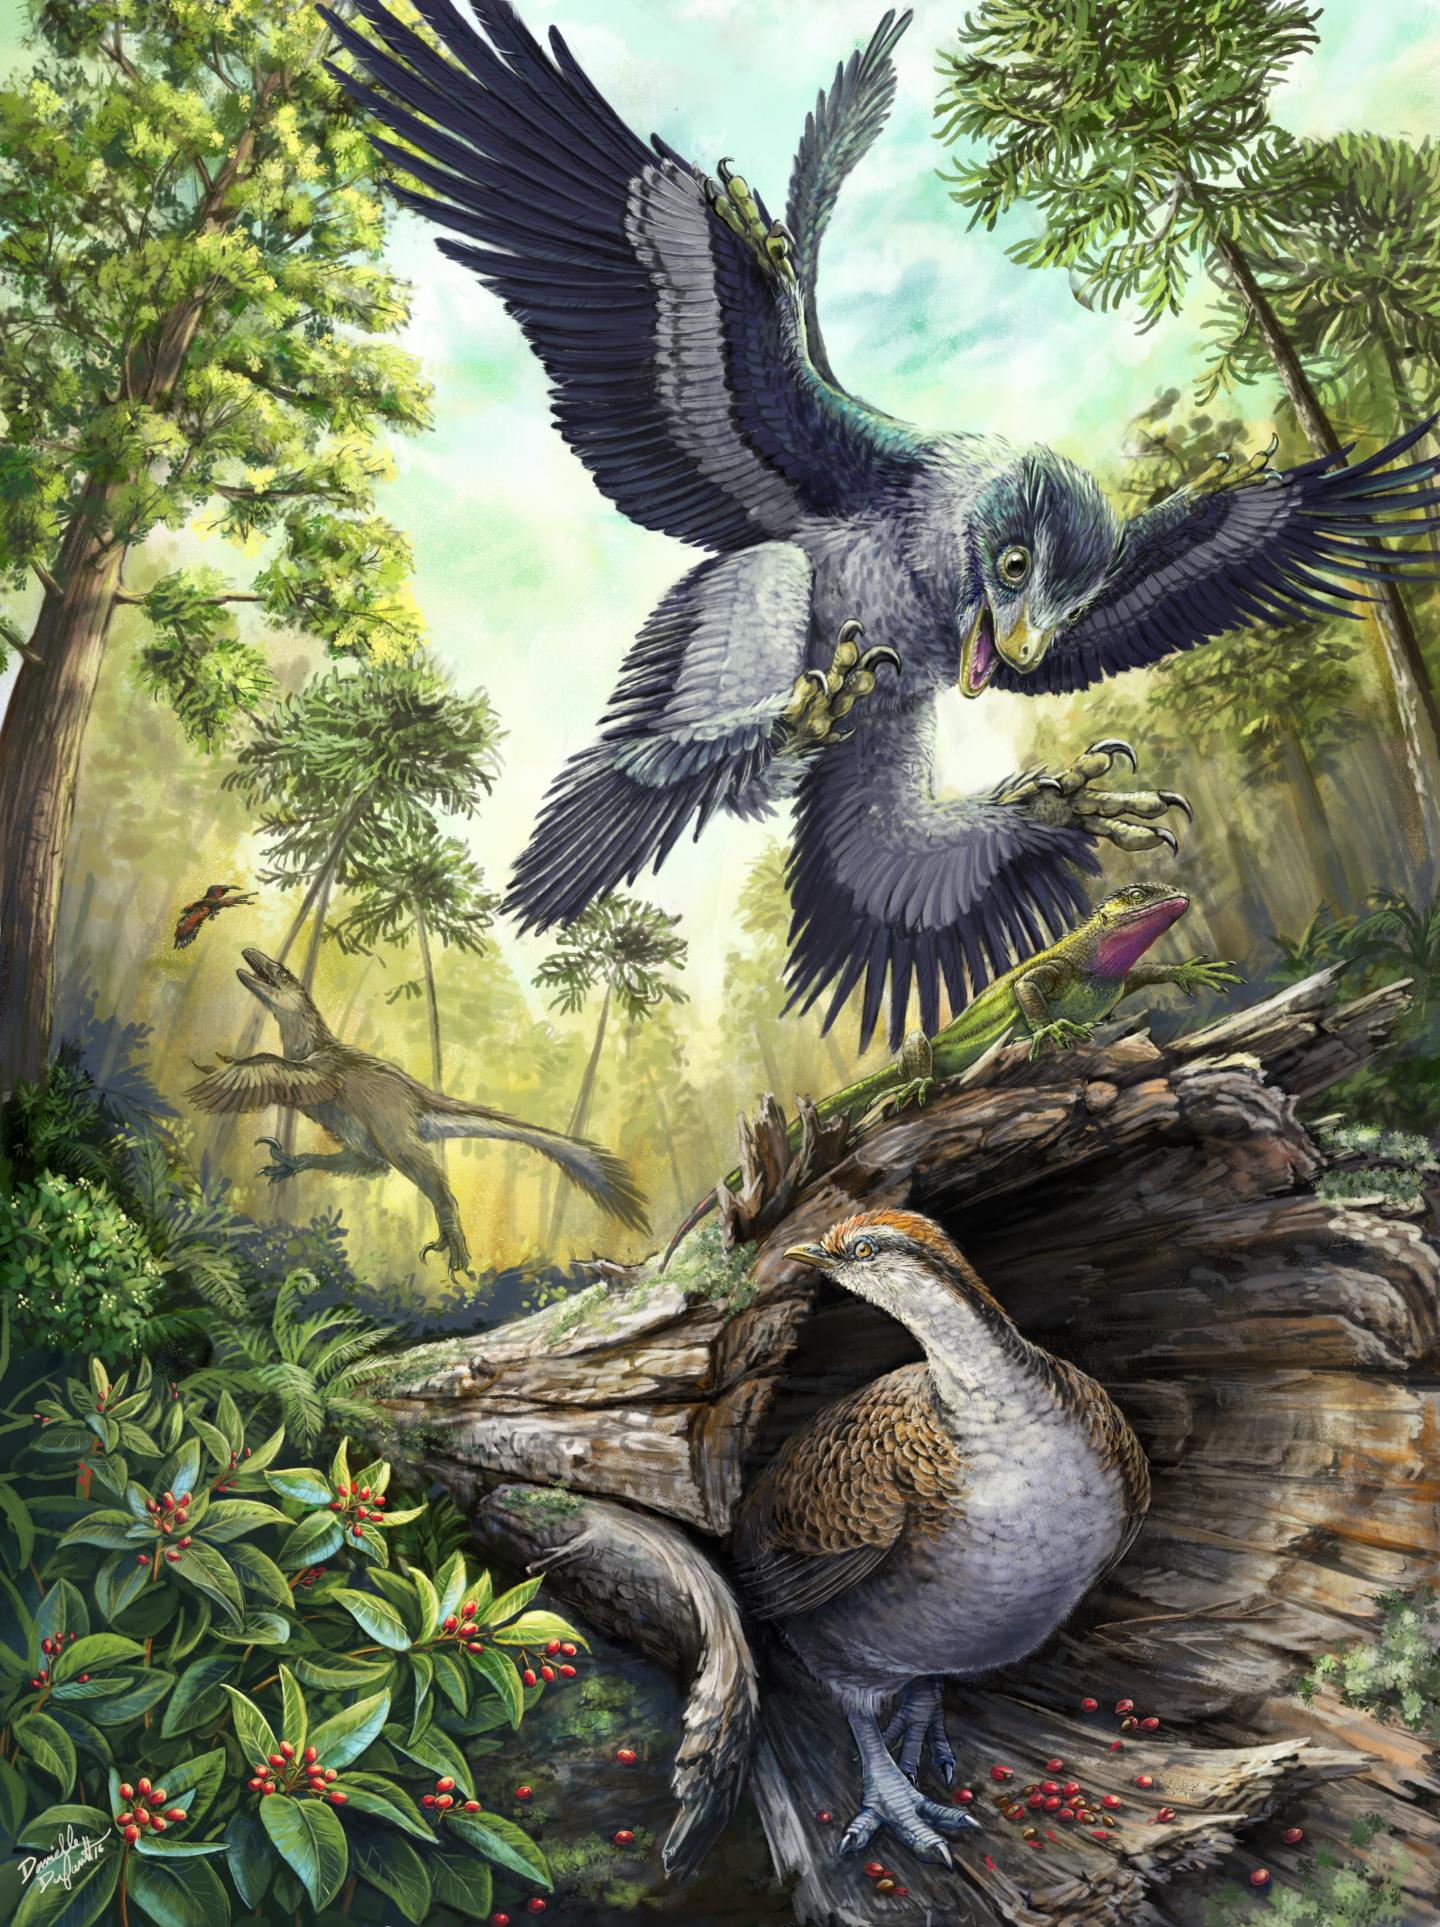 Cretaceous Bird-Like Dinosaurs